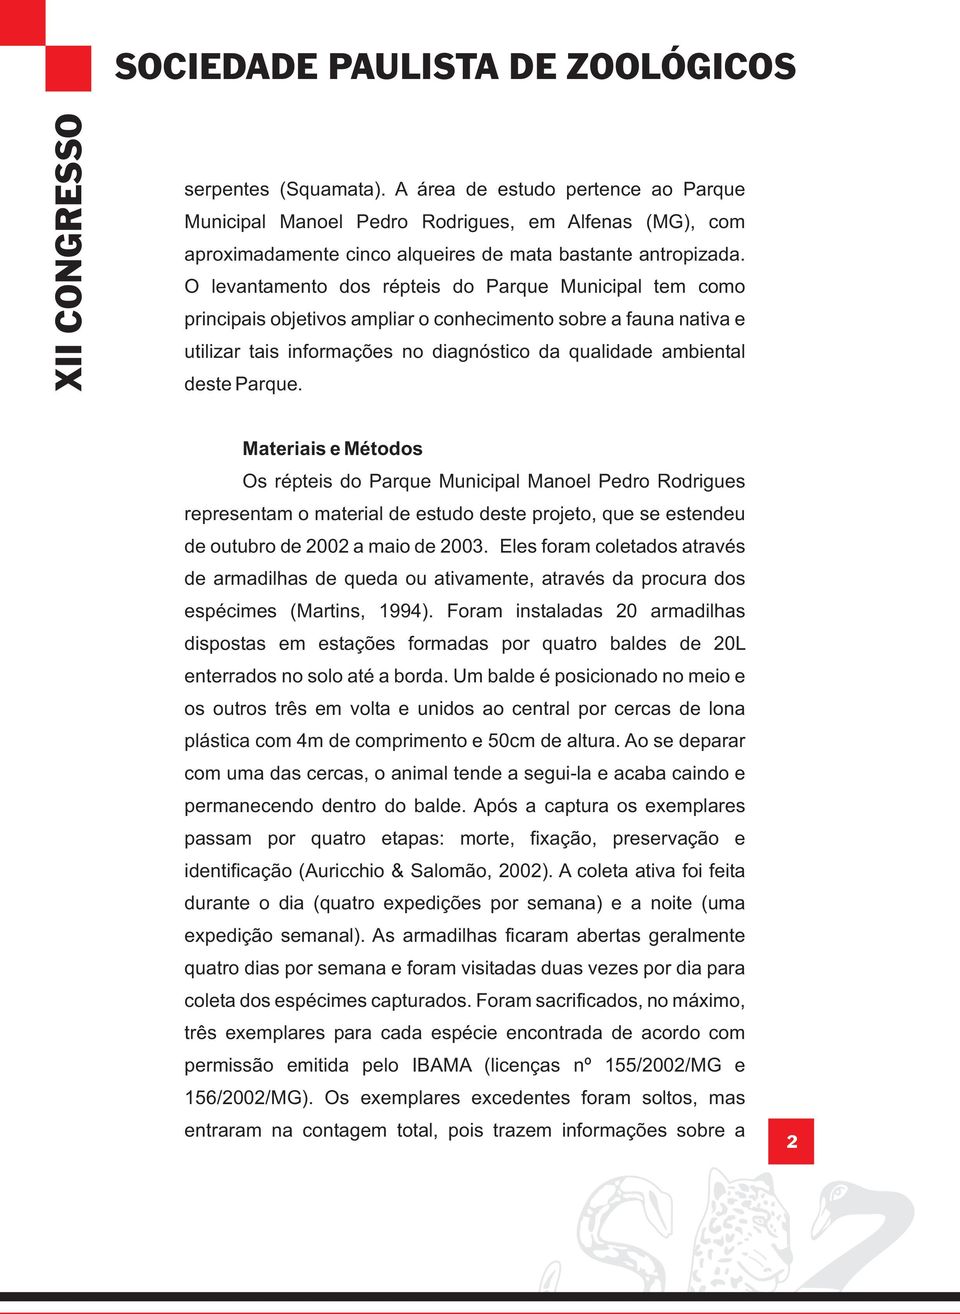 Materiais e Métodos Os répteis do Parque Municipal Manoel Pedro Rodrigues representam o material de estudo deste projeto, que se estendeu de outubro de 2002 a maio de 2003.